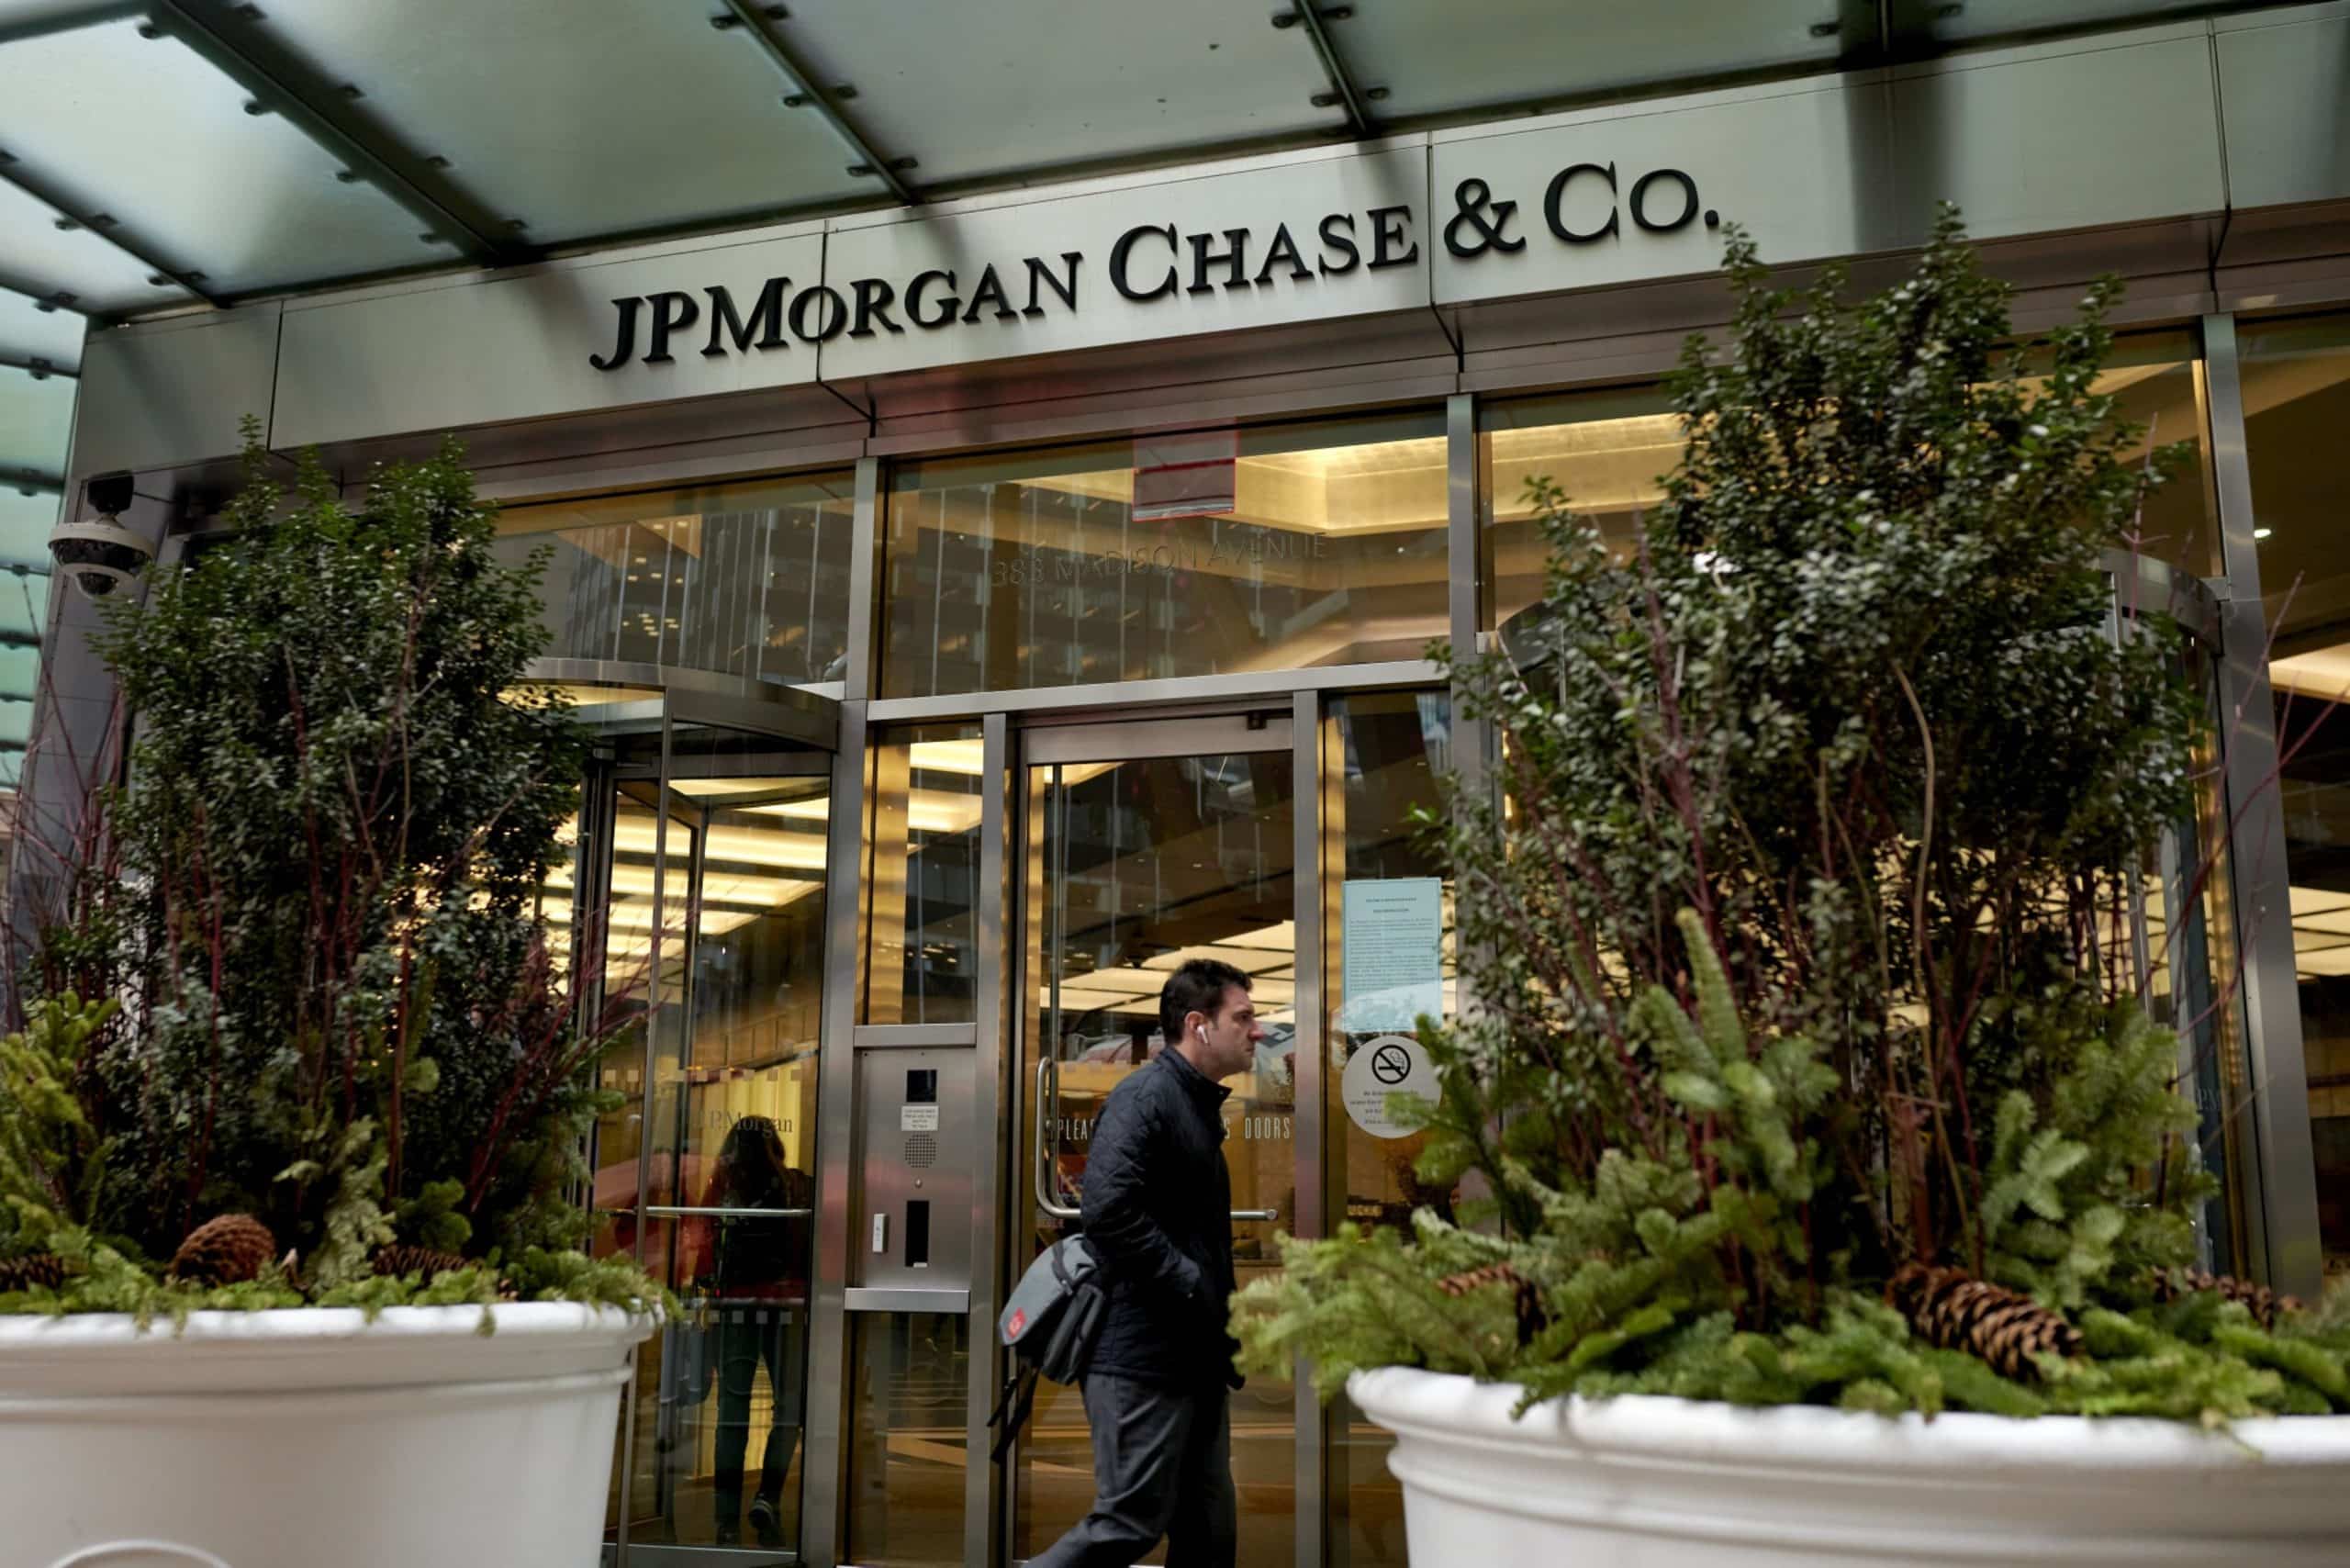 JPMorgan Chase teknologiforbrug falder med 7 % år-til-år til $2.1 mia